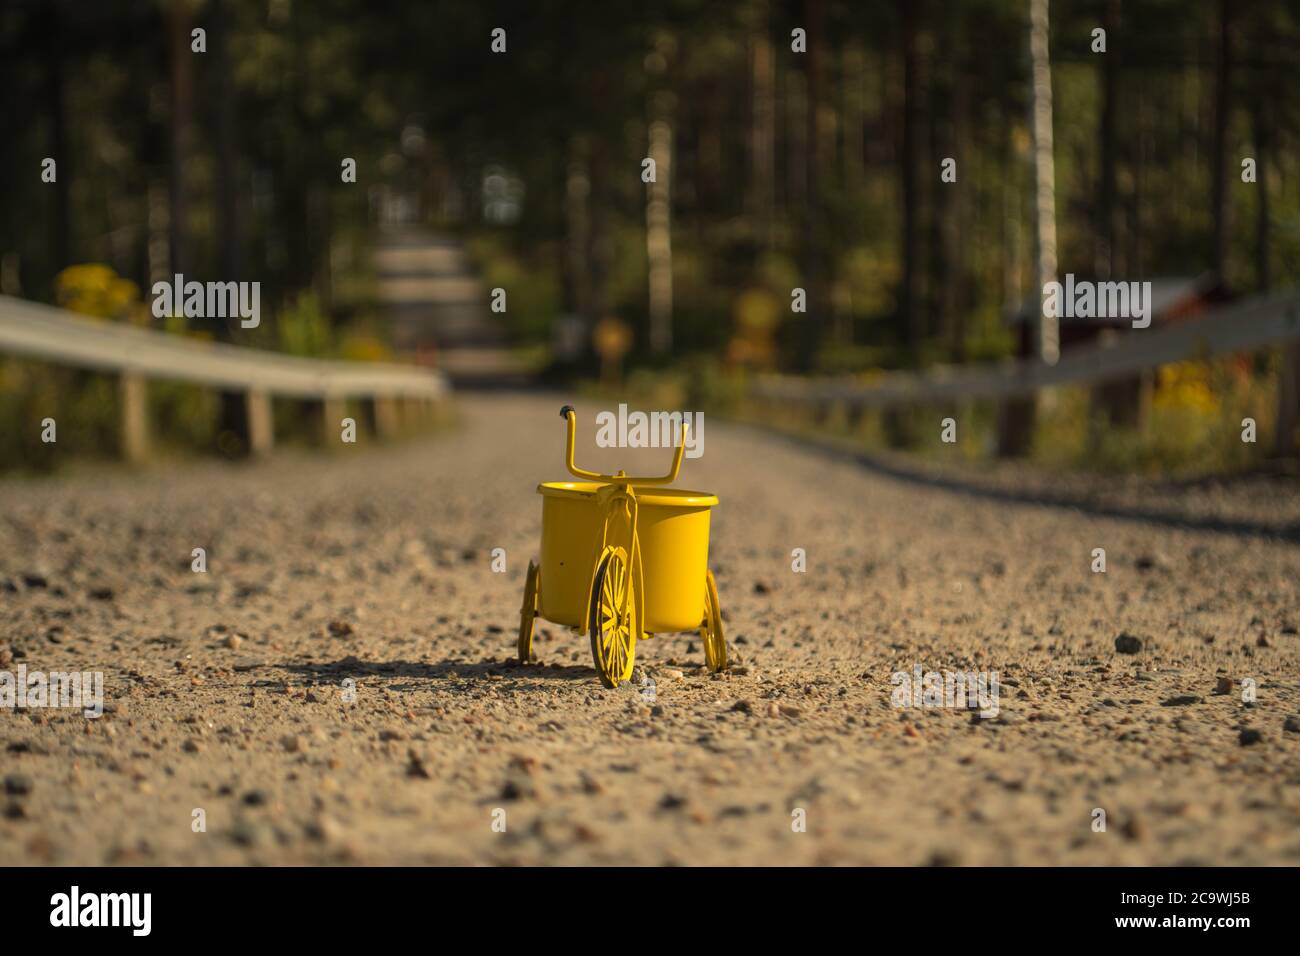 Ein gelbes Spielzeug-Dreirad auf einer Schotterstraße Stockfoto